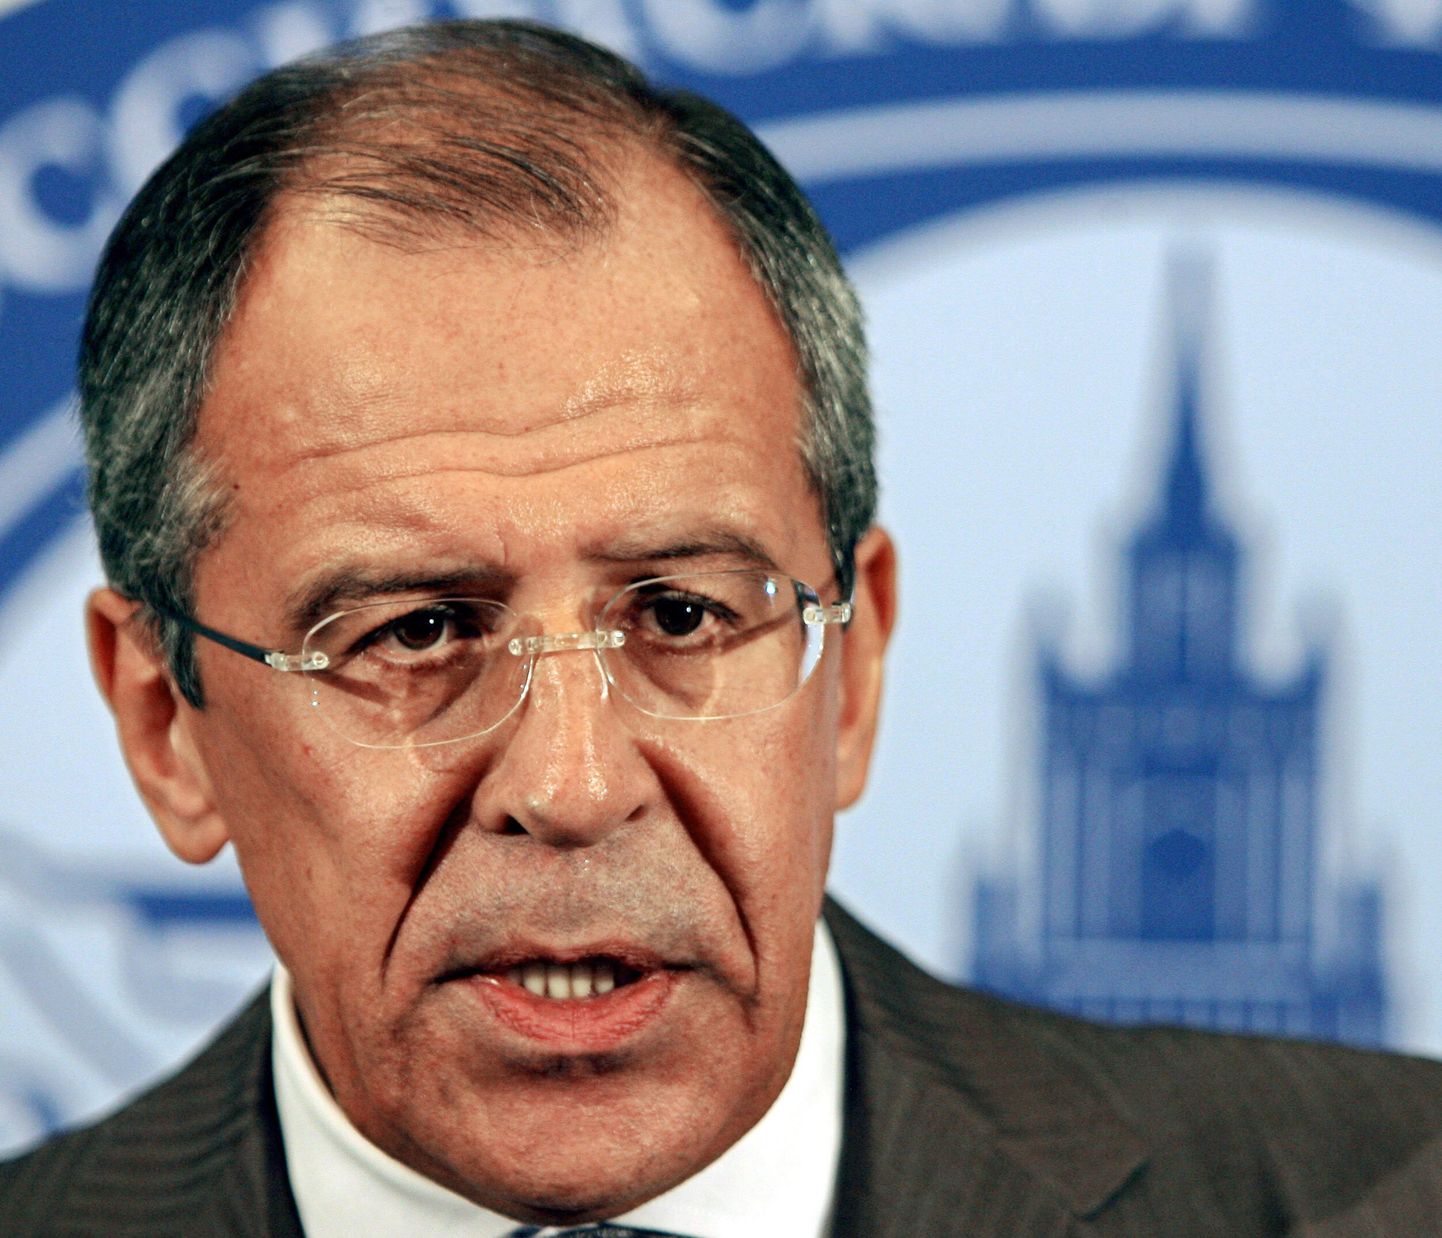 Venemaa välisminister Sergei Lavrov.